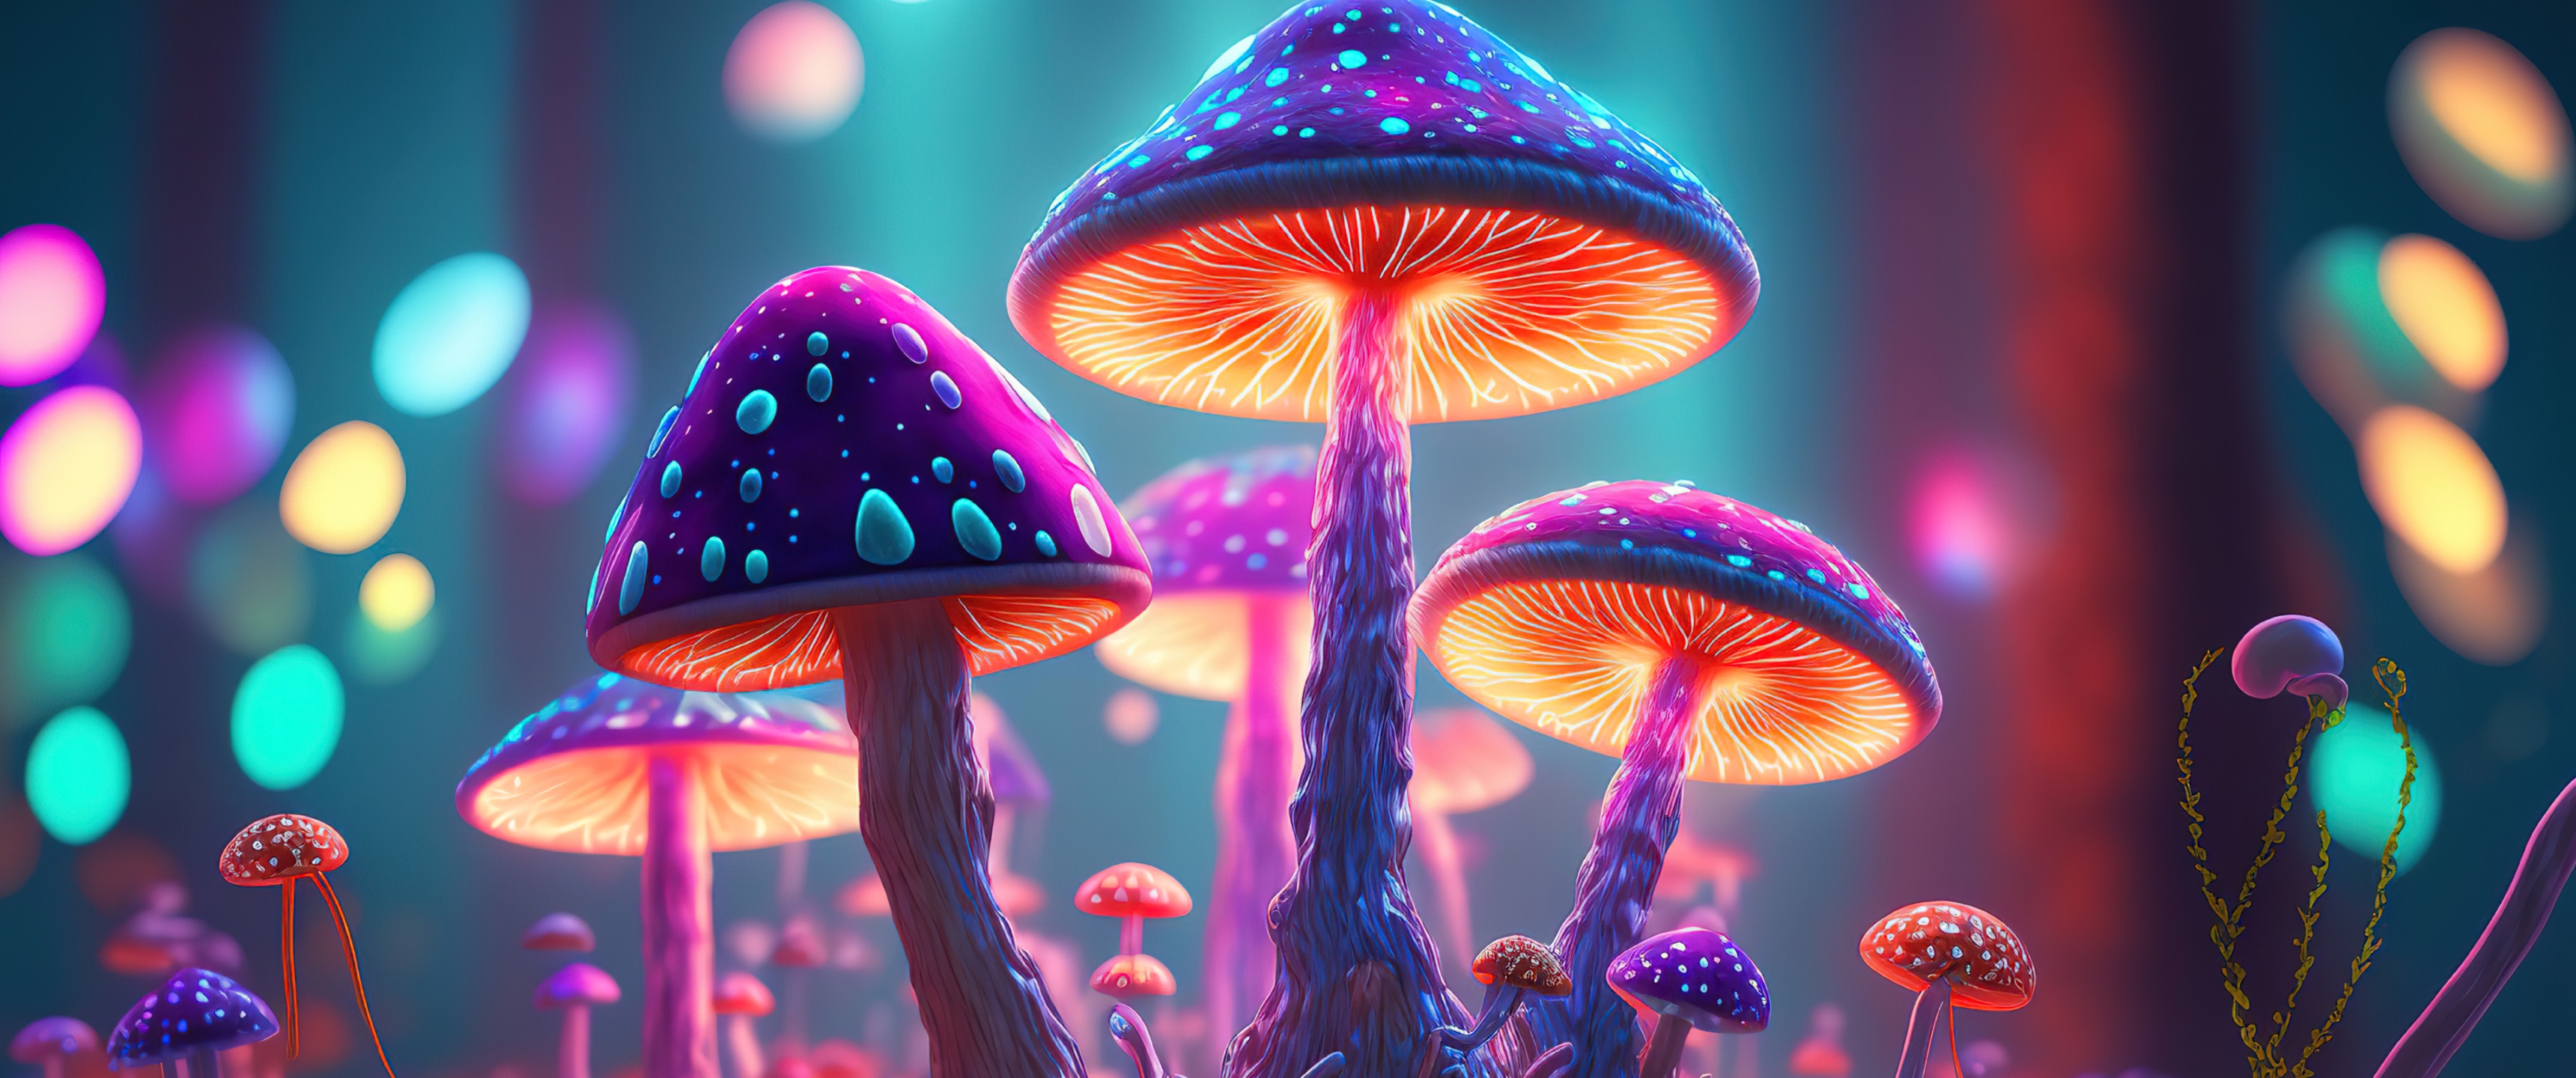 Mushroom, trippy, hippie, psychedelic, mystical